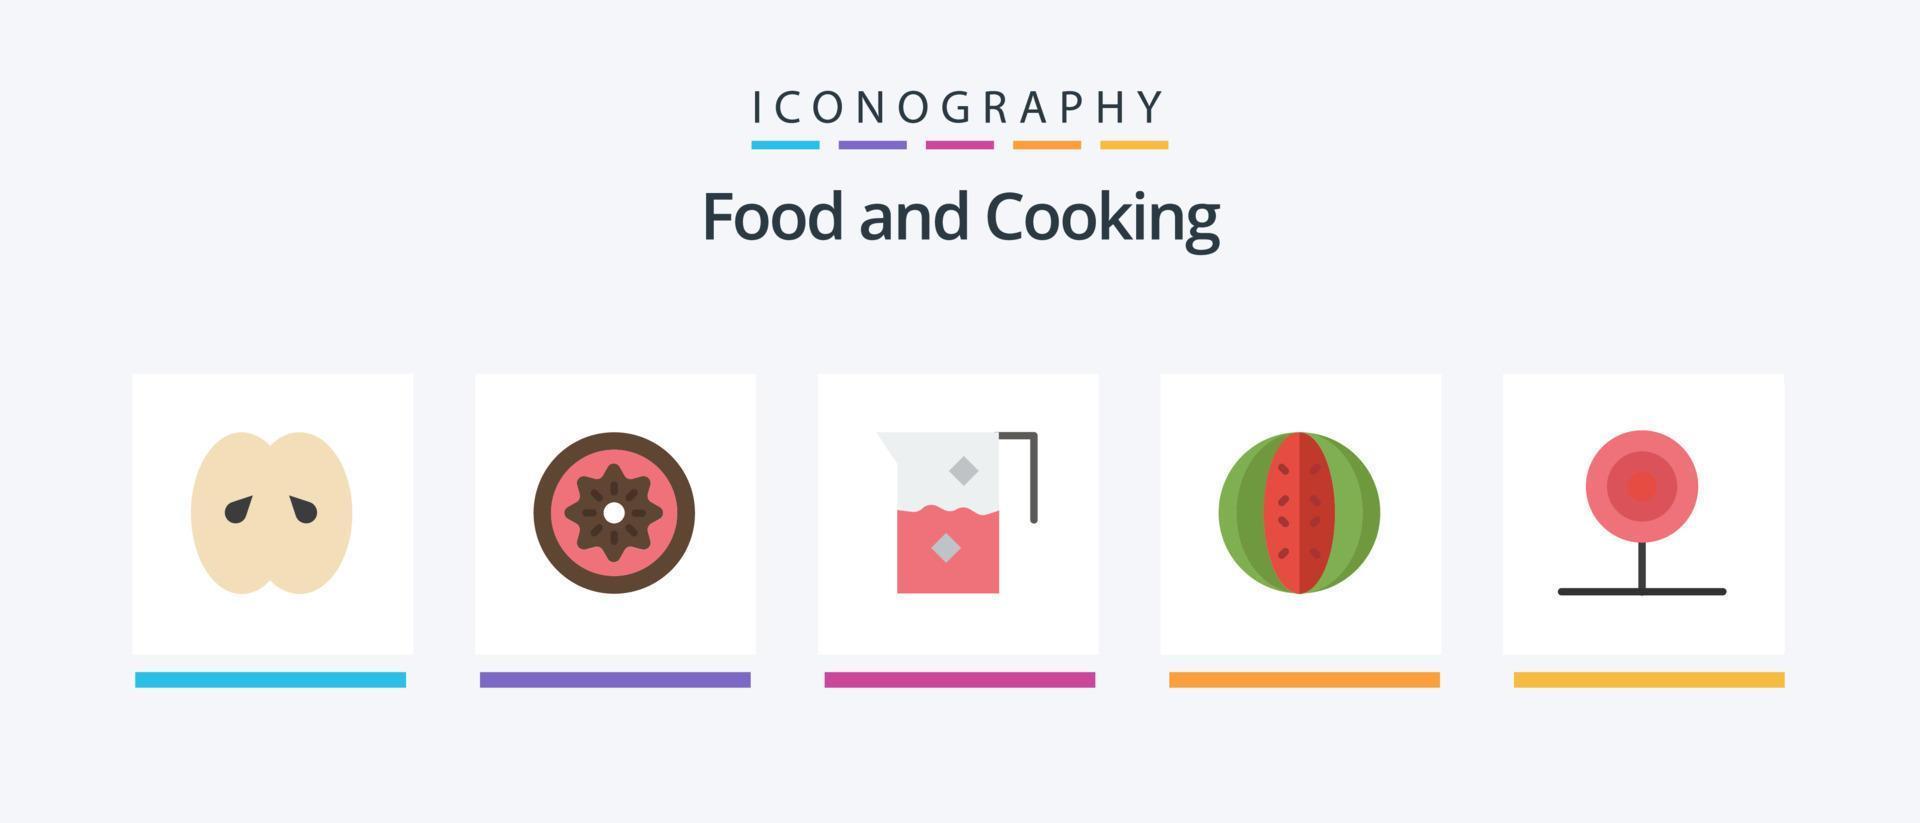 voedsel vlak 5 icoon pak inclusief fruit. drankje. kiwi. kruik. drankje. creatief pictogrammen ontwerp vector